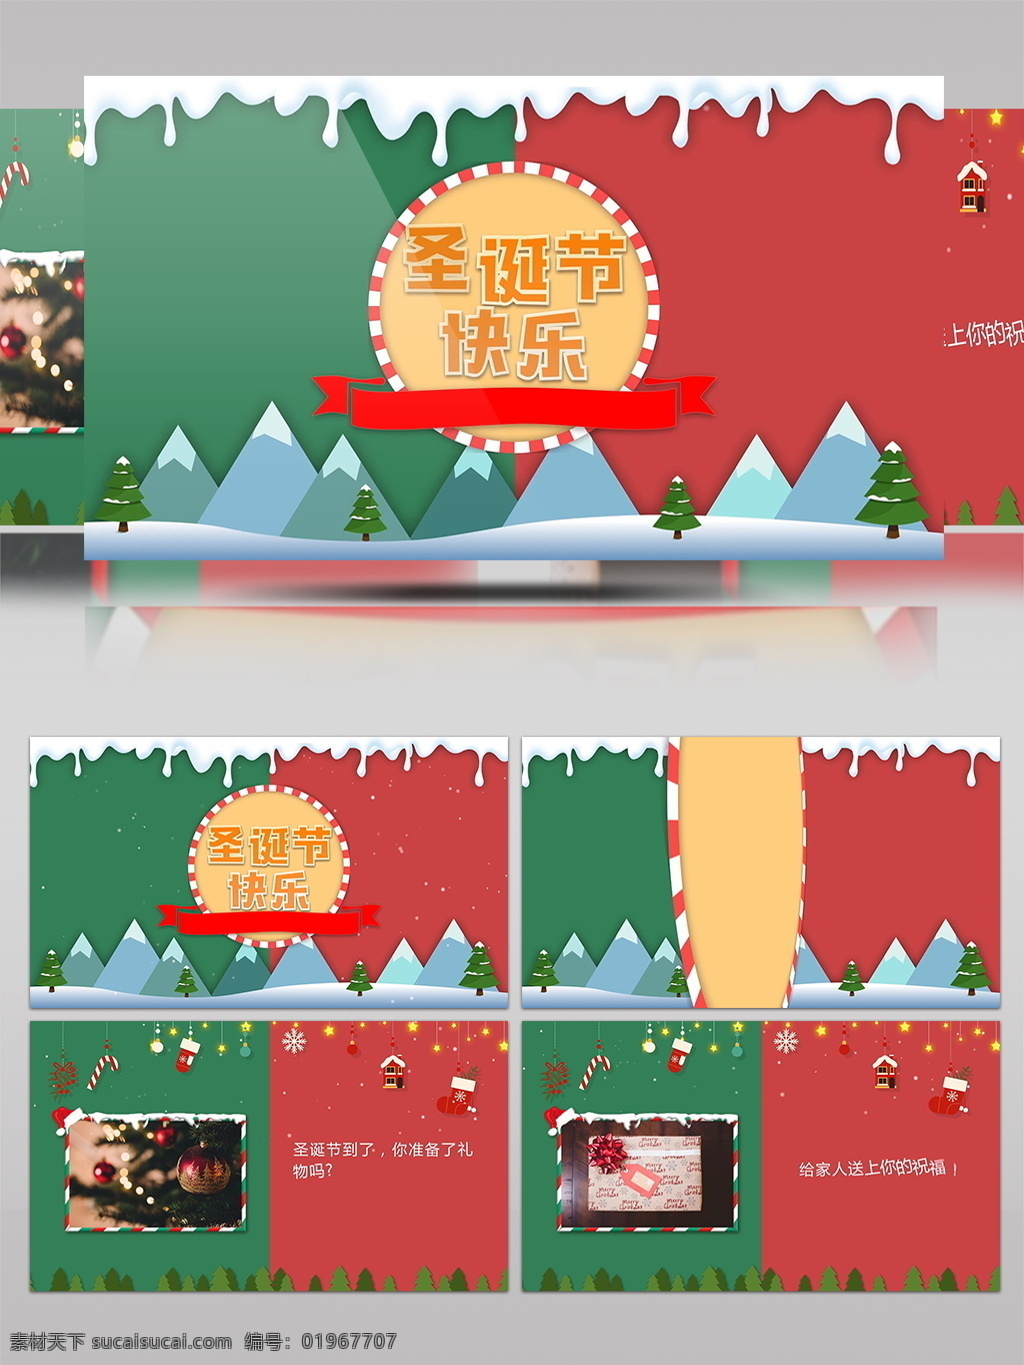 欢乐 圣诞节 片头 ae 模板 红色 圣诞树 下雪 喜庆 平安夜 圣诞图片展示 新年祝福 圣诞节祝福 圣诞礼物 merry christmas